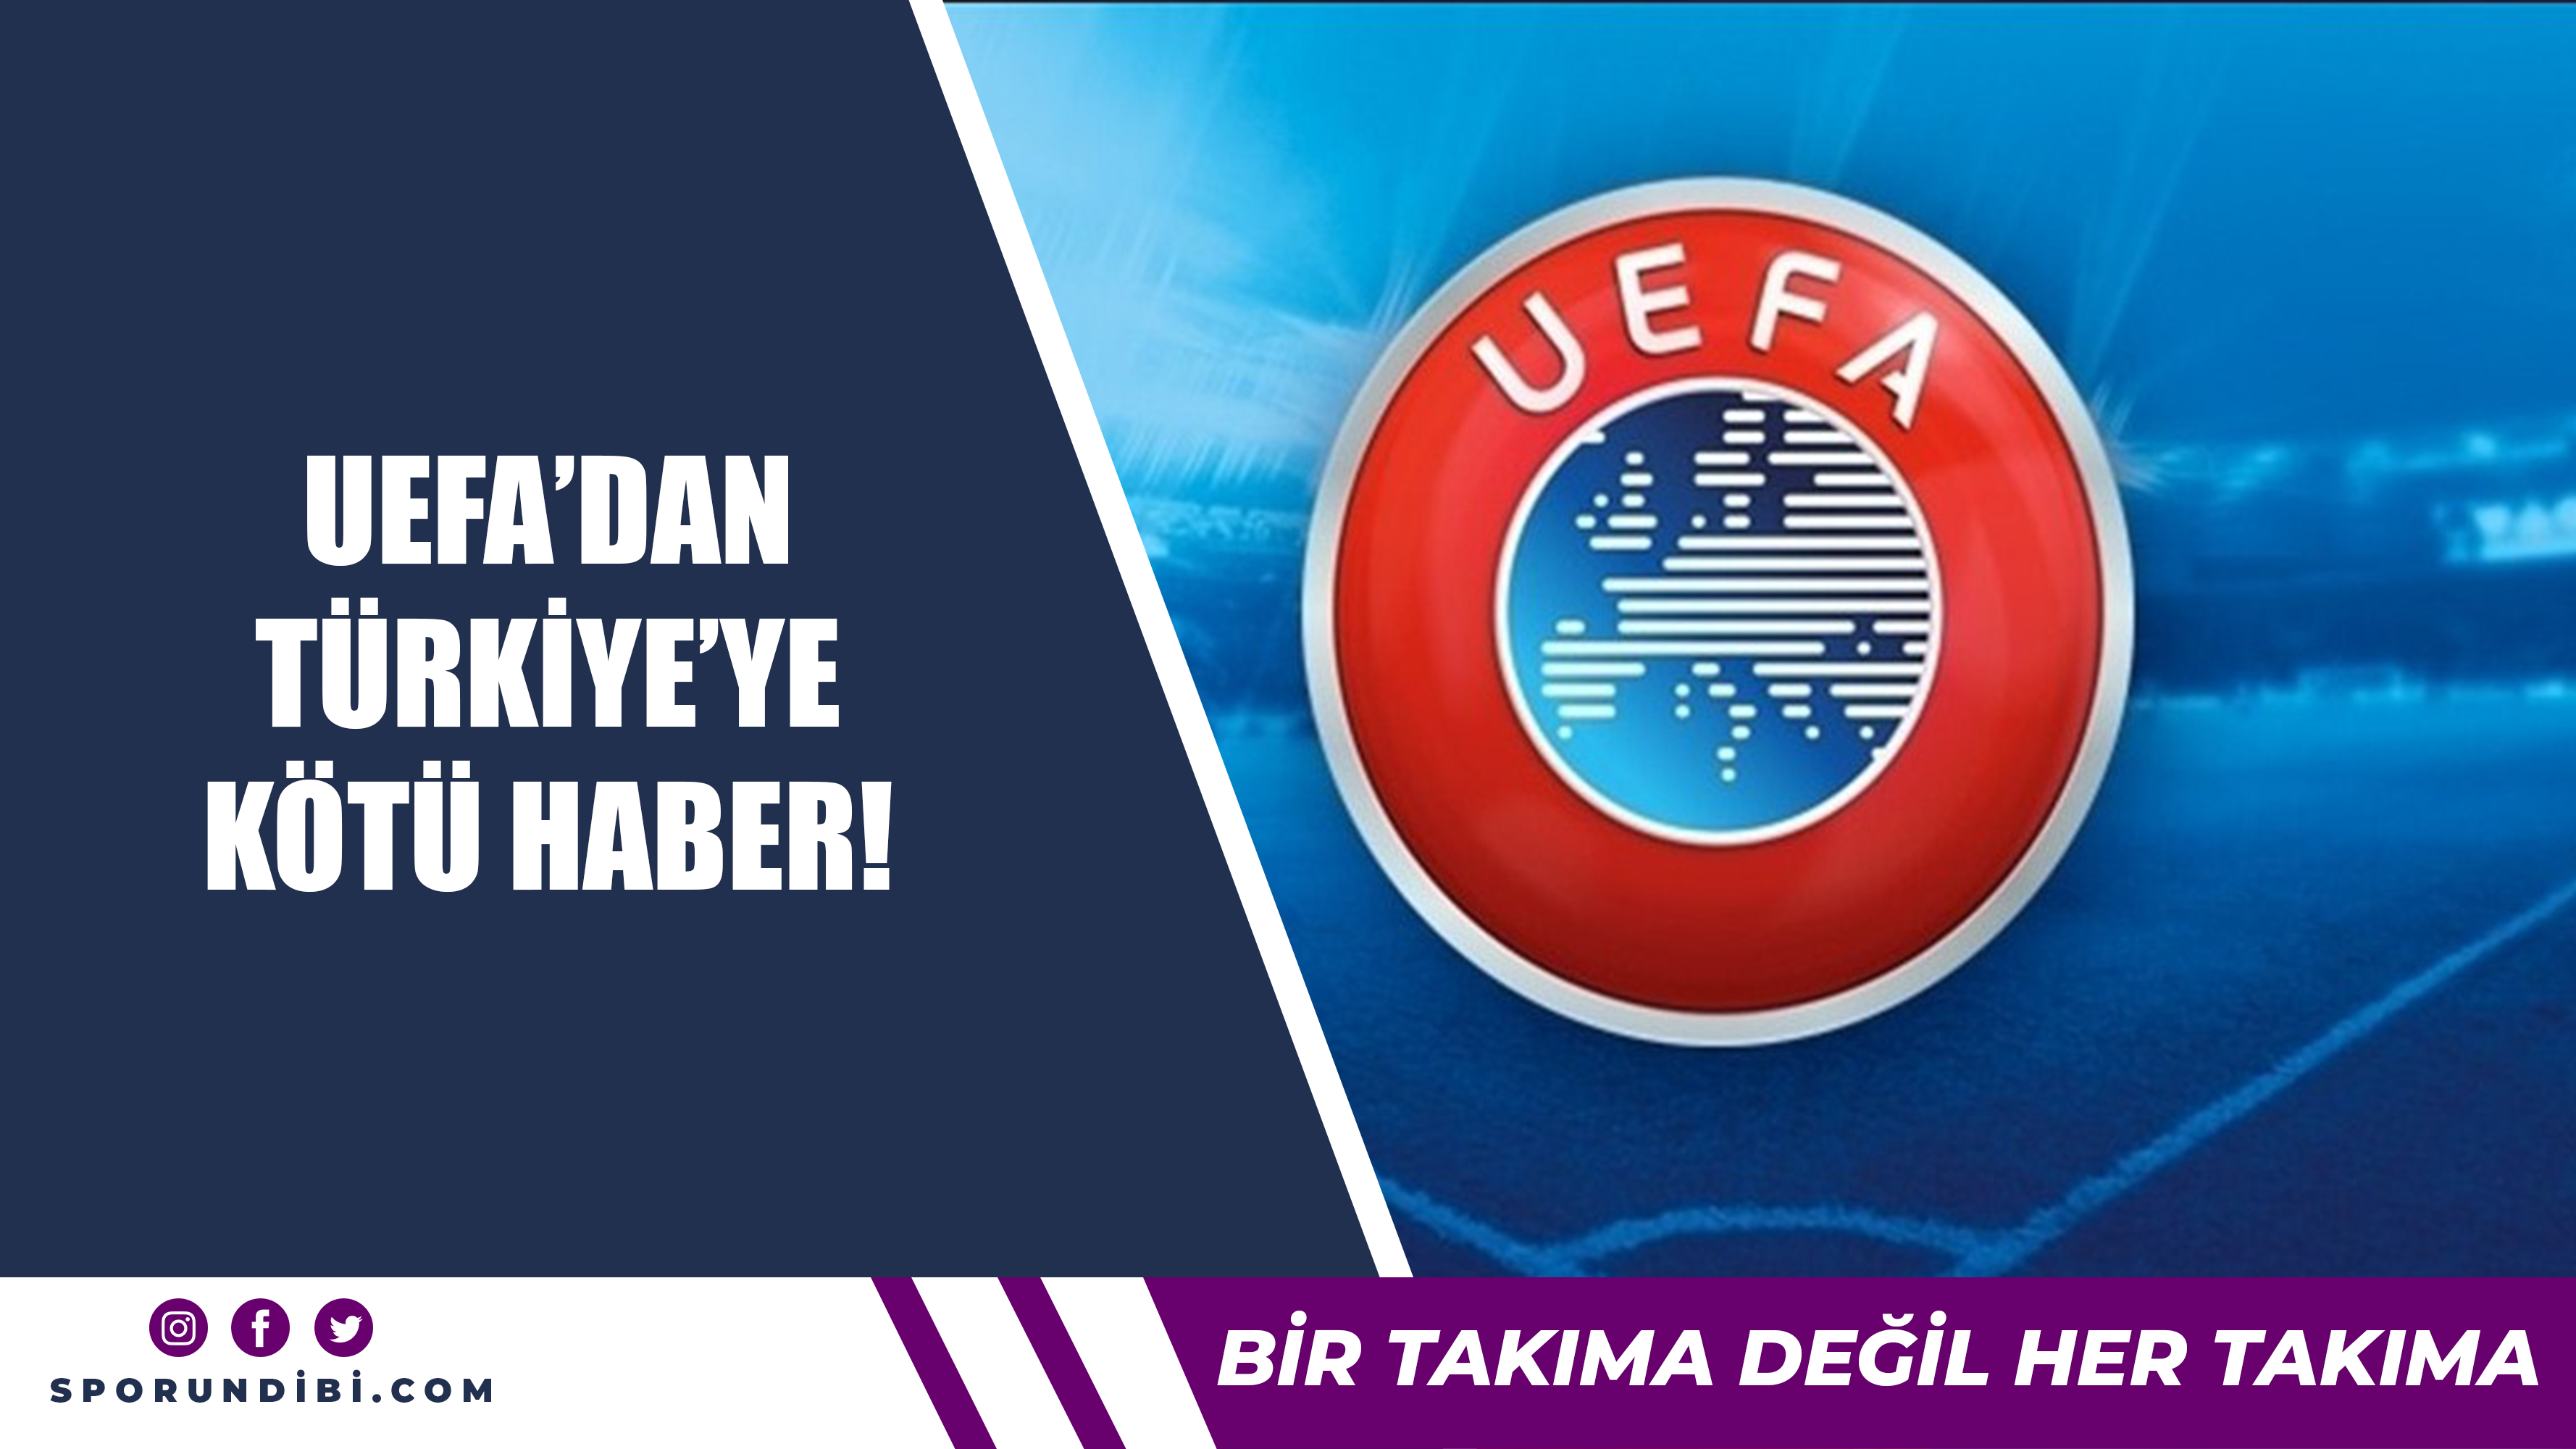 UEFA'dan Türkiye'ye kötü haber!